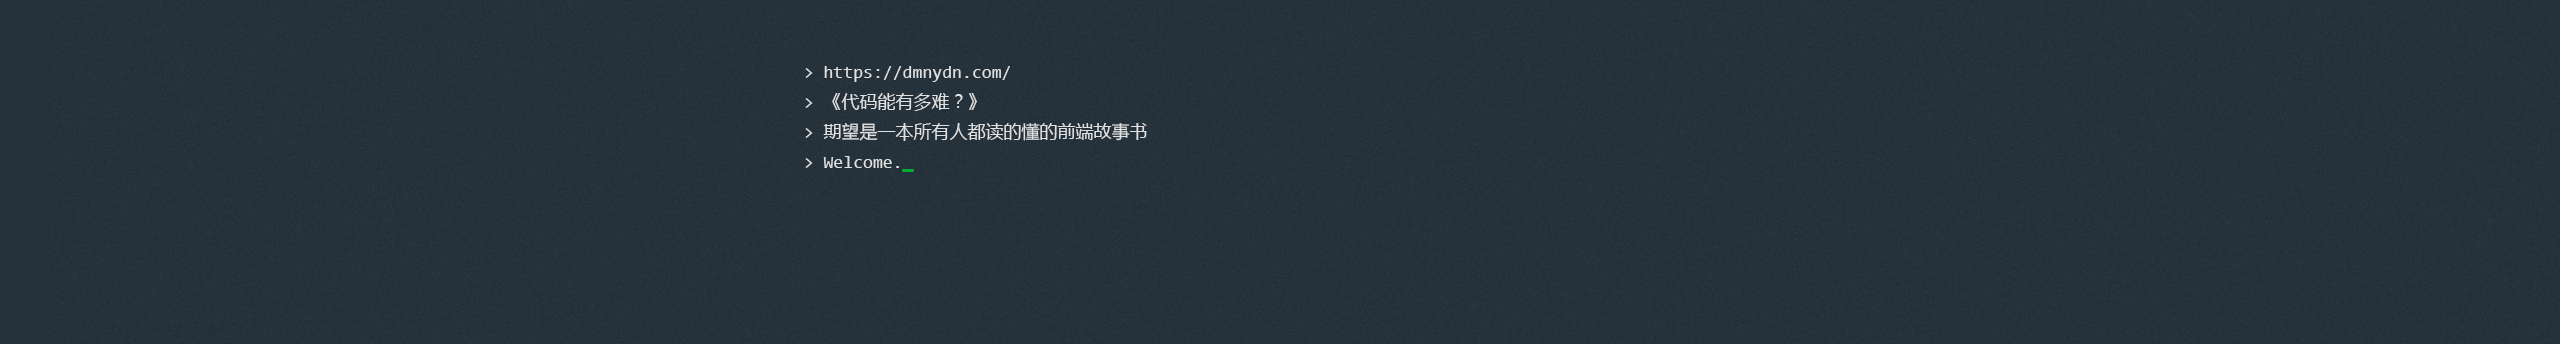 北京网页设计师我是稻米鼠的创作者主页